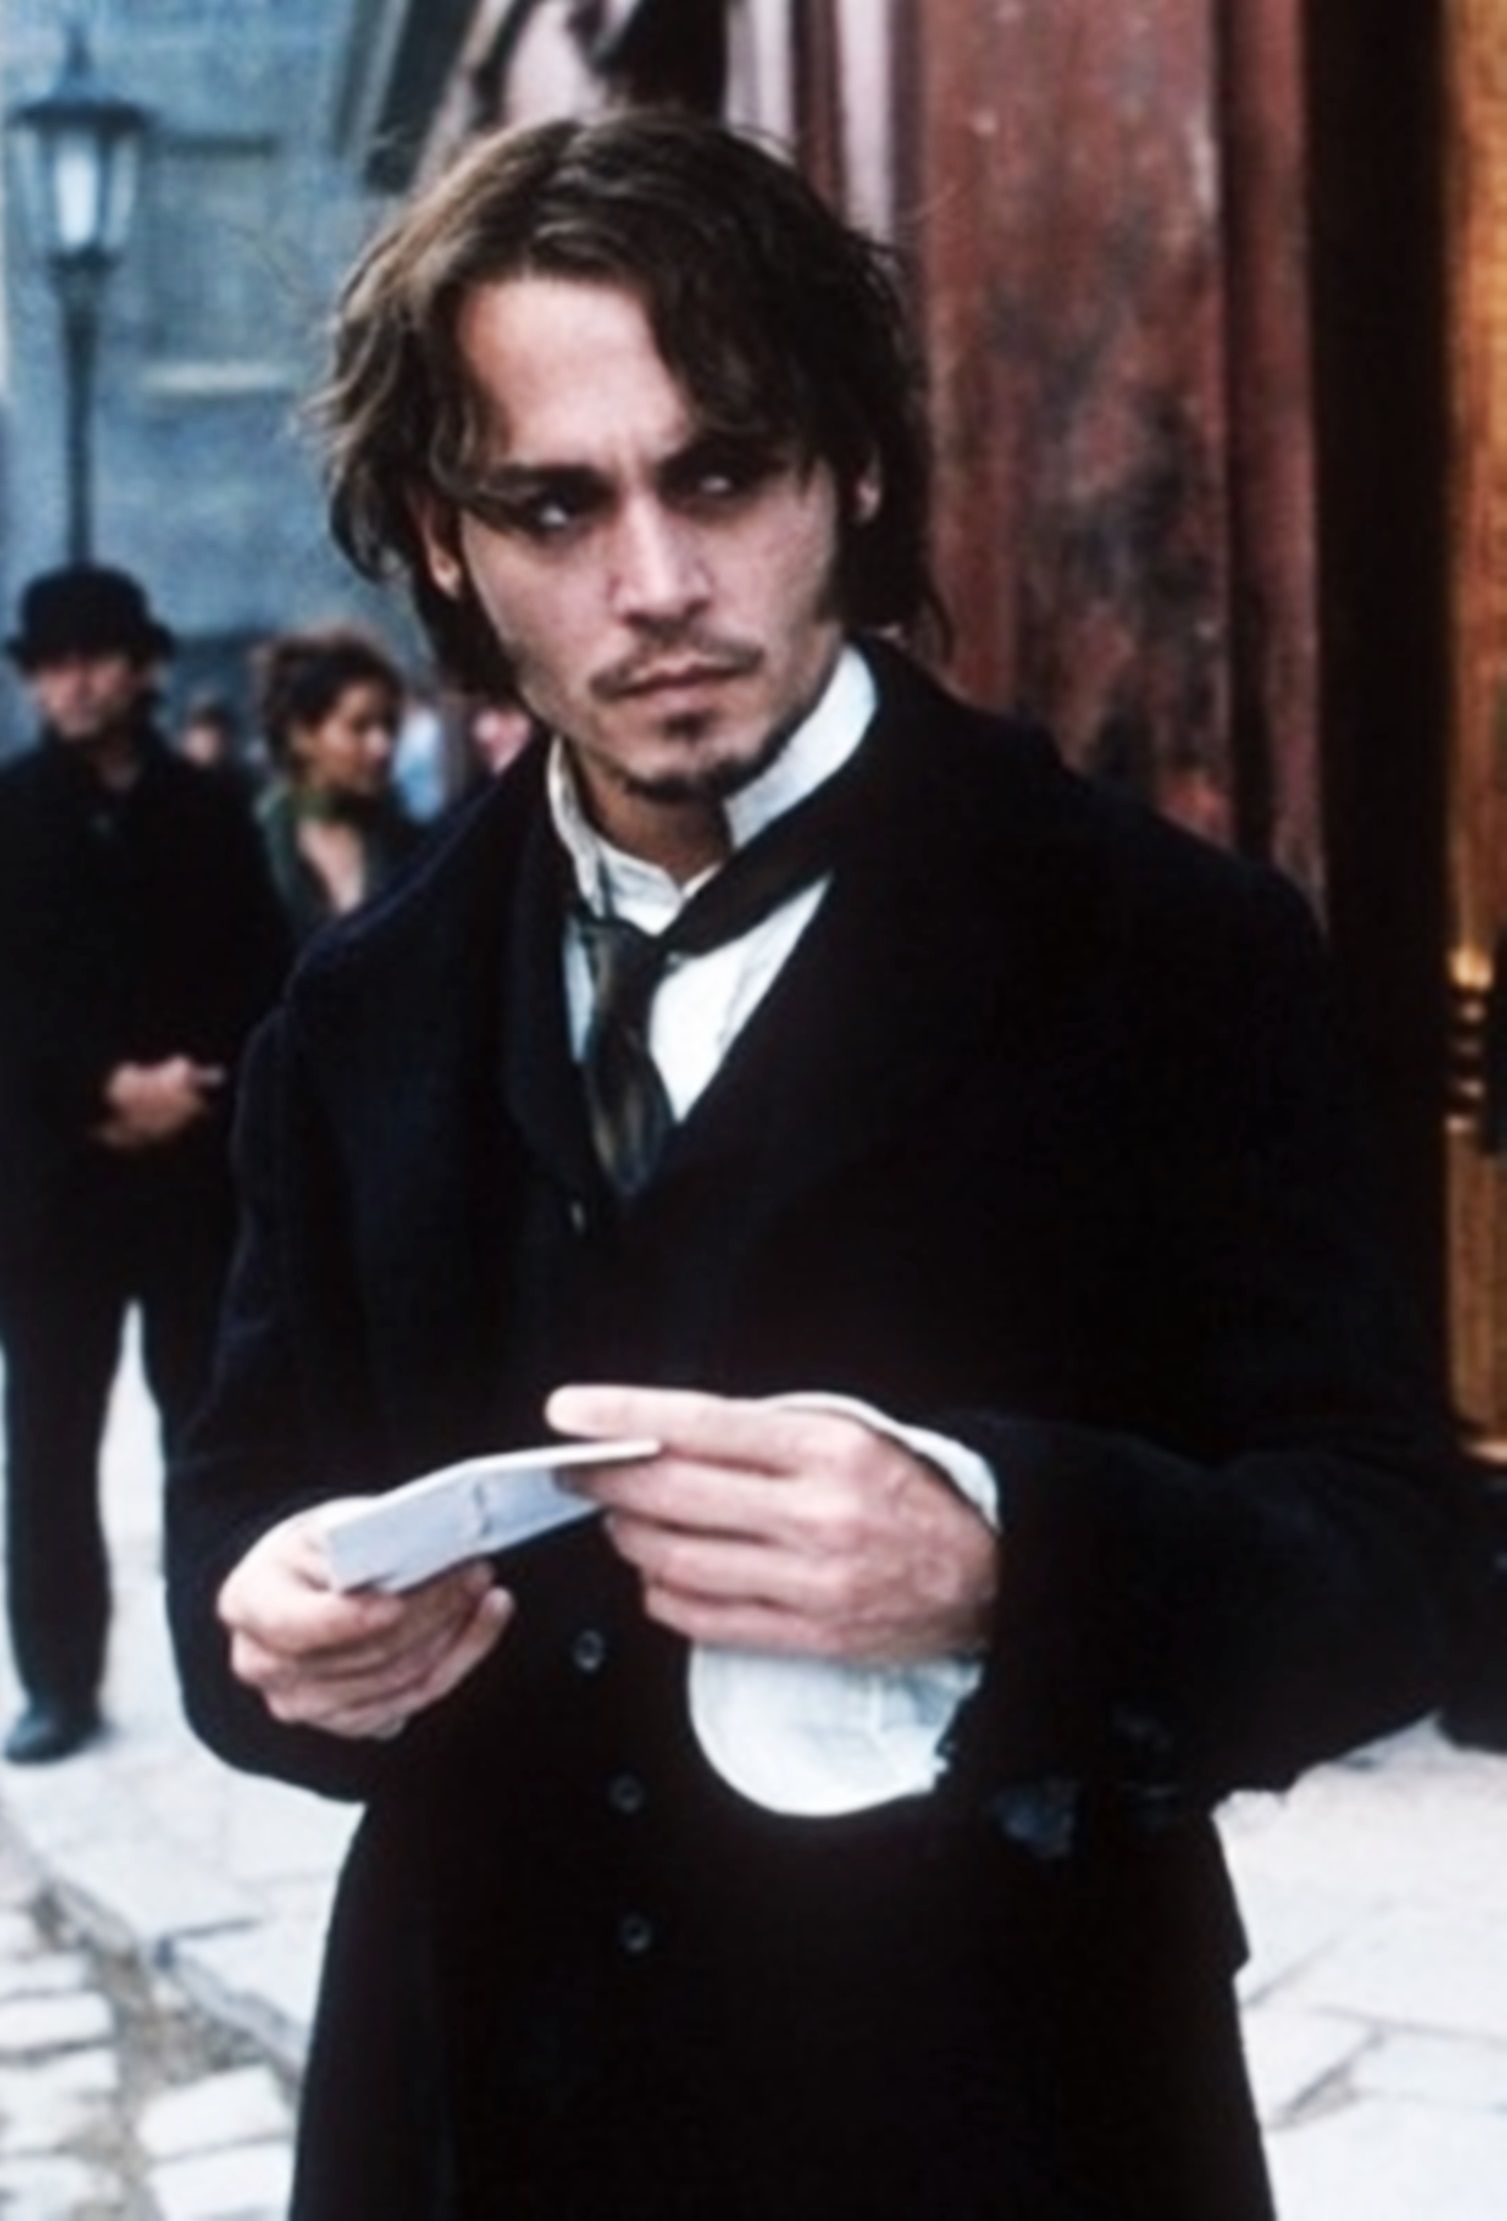 From Hell foi adaptado para o cinema, com Johnny Depp e Heather Graham. O autor não aprovou a adaptação. 20th Century Fox